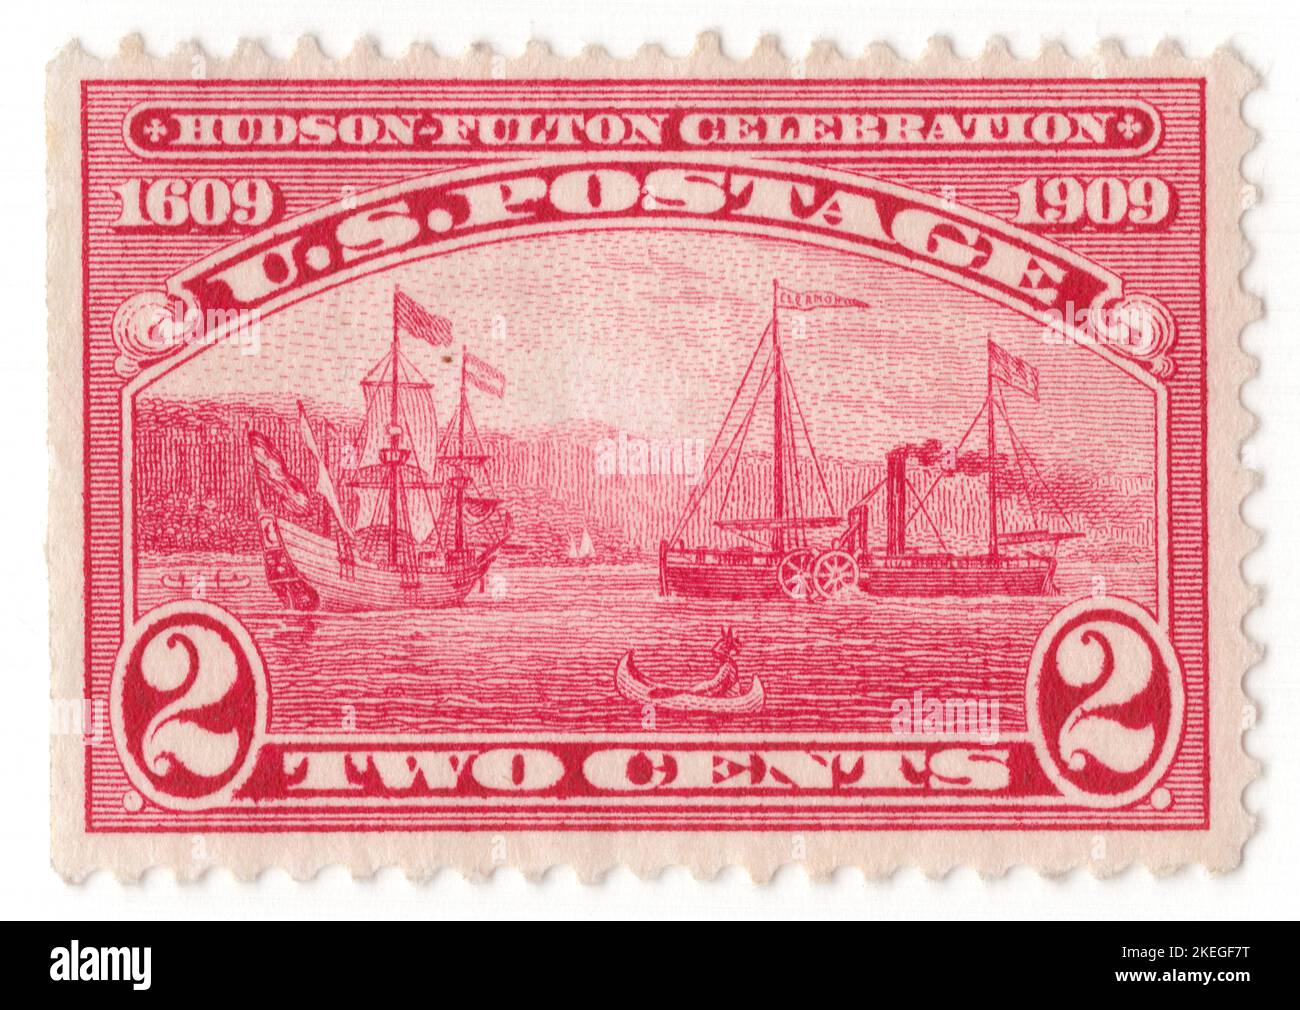 Etats-Unis - 1909 25 septembre : timbre-poste de 2 cents à la carmin représentant le navire de voile « Half Moon » et le navire à vapeur « Clermont » sur le fleuve Hudson. Hudson-Fulton Celebration. Une commémoration élaborée du 300th anniversaire de la découverte de la rivière Hudson par Henry Hudson et du 100th anniversaire de la première application commerciale réussie du bateau à aubes par Robert Fulton. Les réalisations maritimes d'Hudson et de Fulton ont fait ressortir l'importance de la rivière pour le progrès et l'identité de New York Banque D'Images